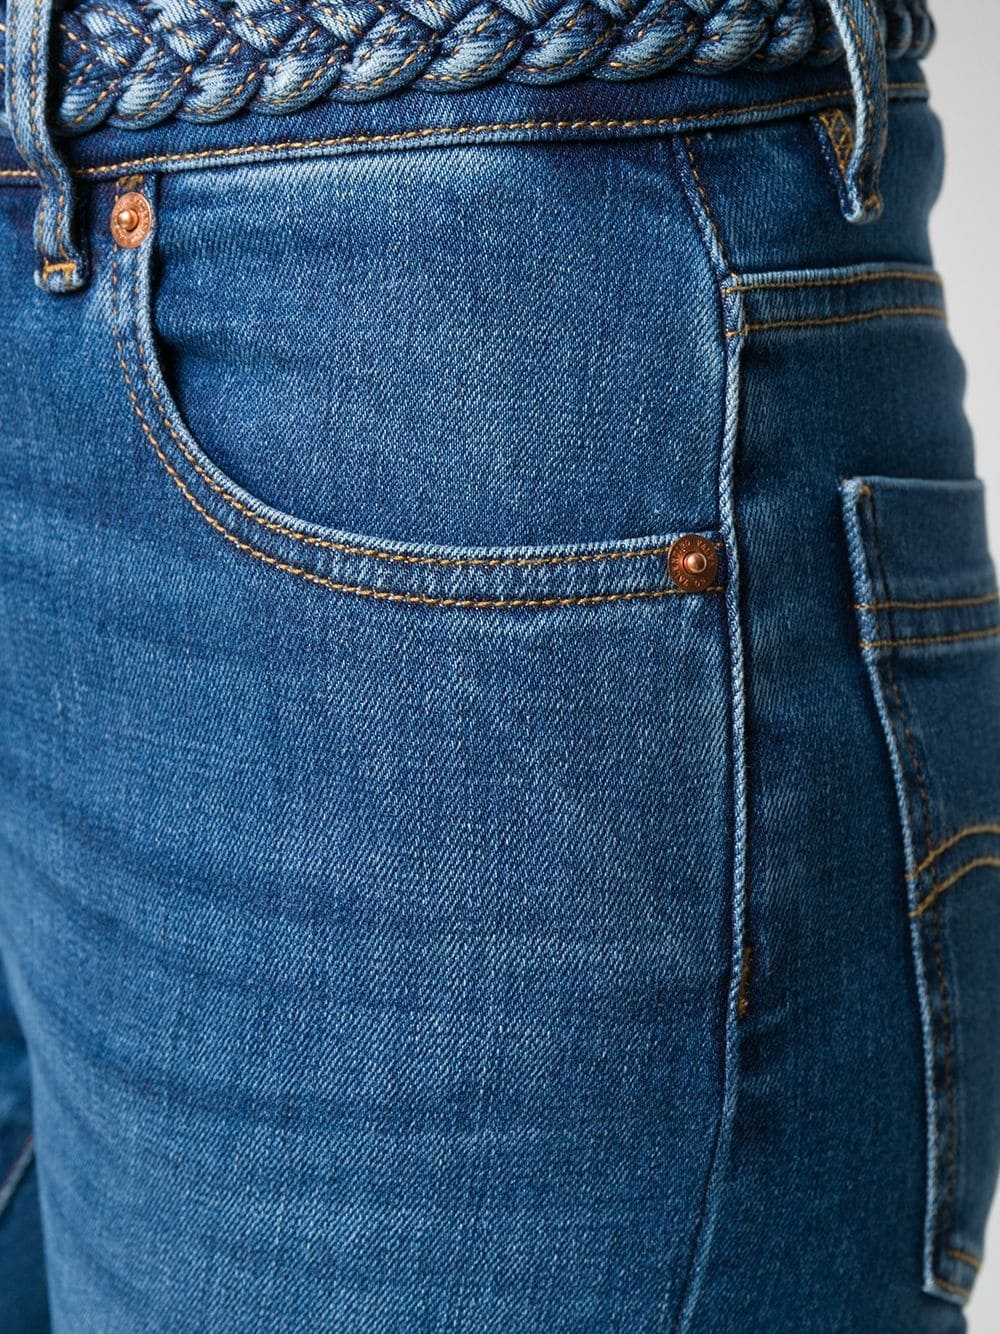 фото Valentino джинсы скинни с плетеным поясом